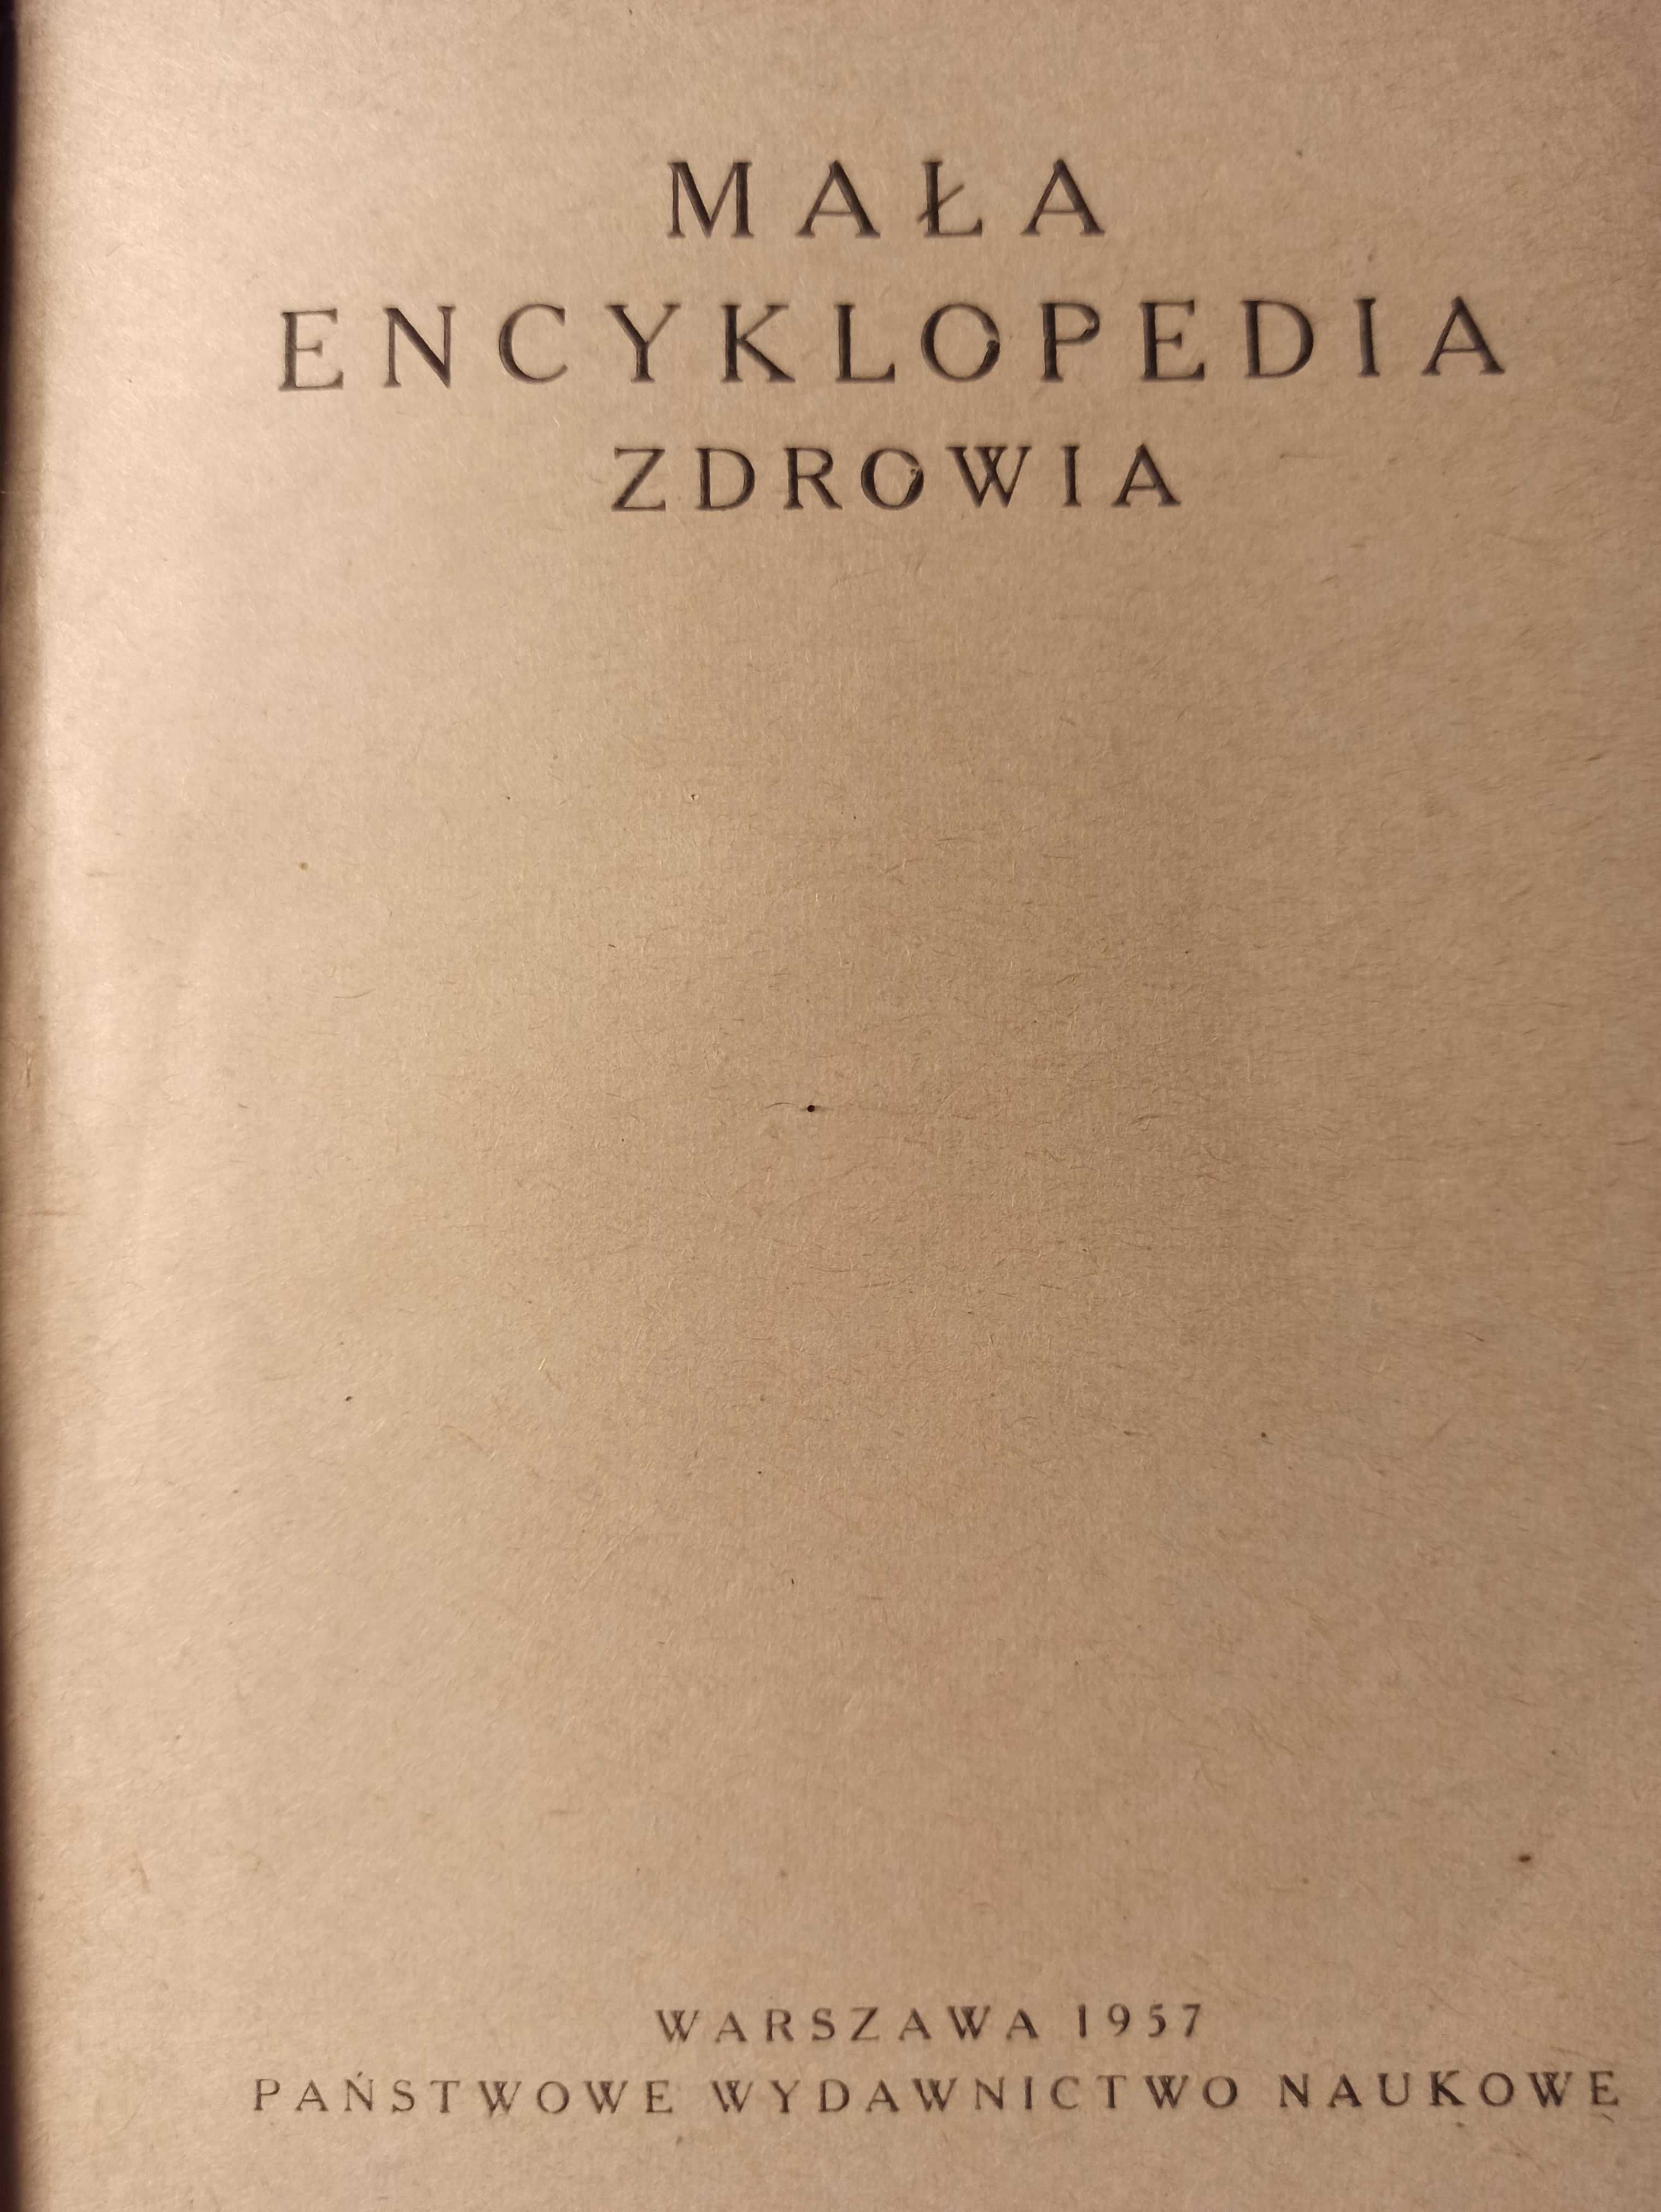 Mała encyklopedia zdrowia, red. dr T. J. Wolański